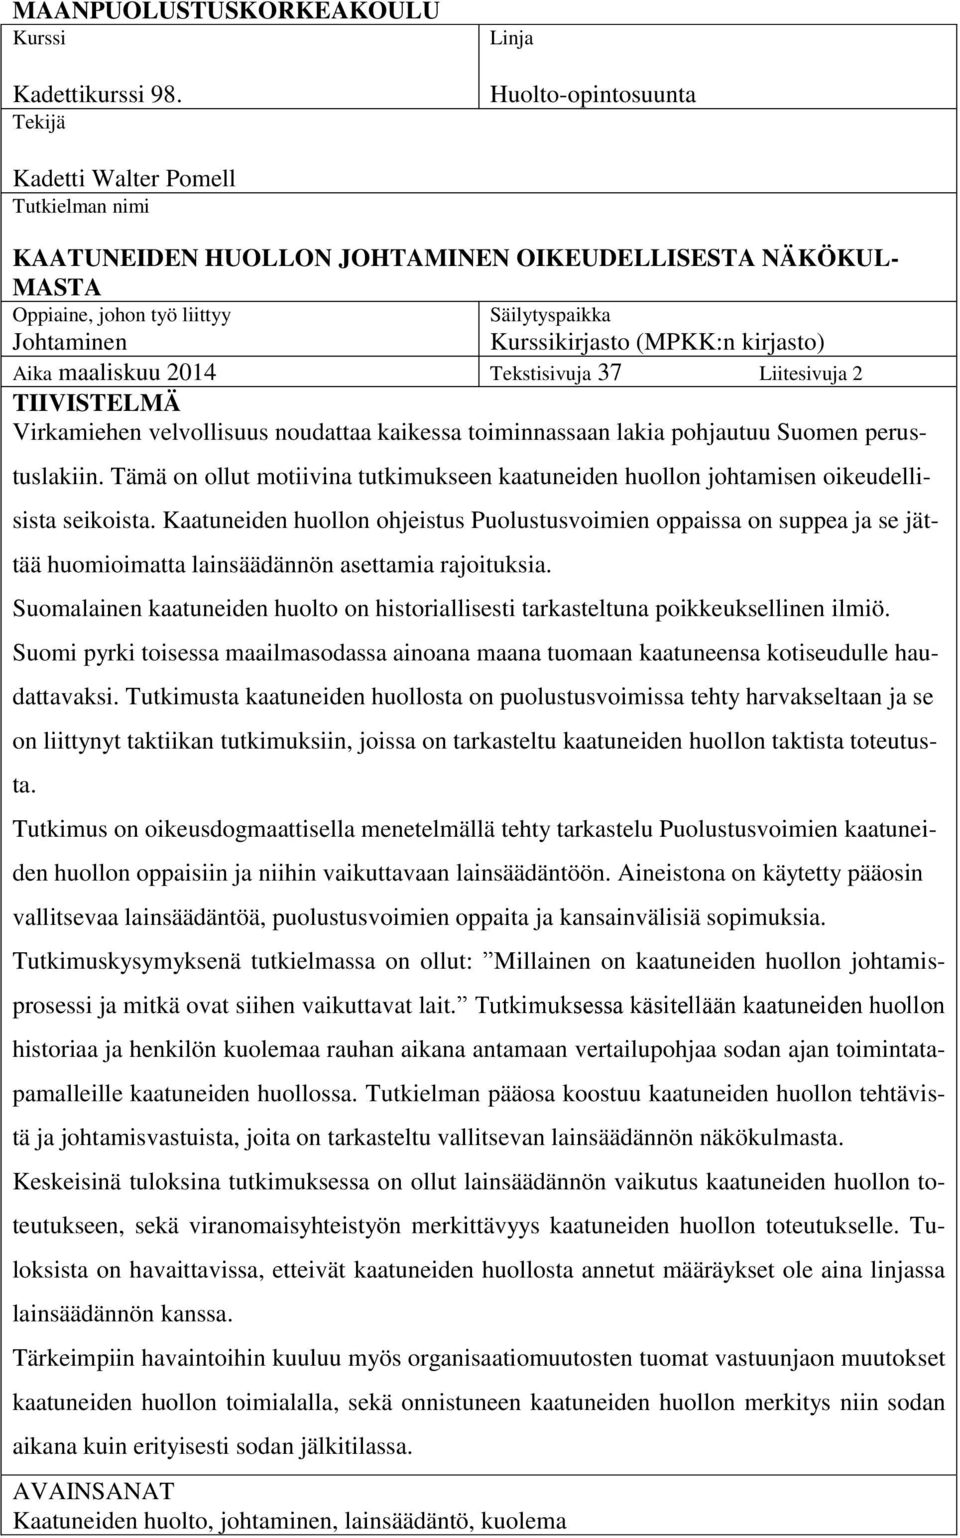 Kurssikirjasto (MPKK:n kirjasto) Aika maaliskuu 2014 Tekstisivuja 37 Liitesivuja 2 TIIVISTELMÄ Virkamiehen velvollisuus noudattaa kaikessa toiminnassaan lakia pohjautuu Suomen perustuslakiin.